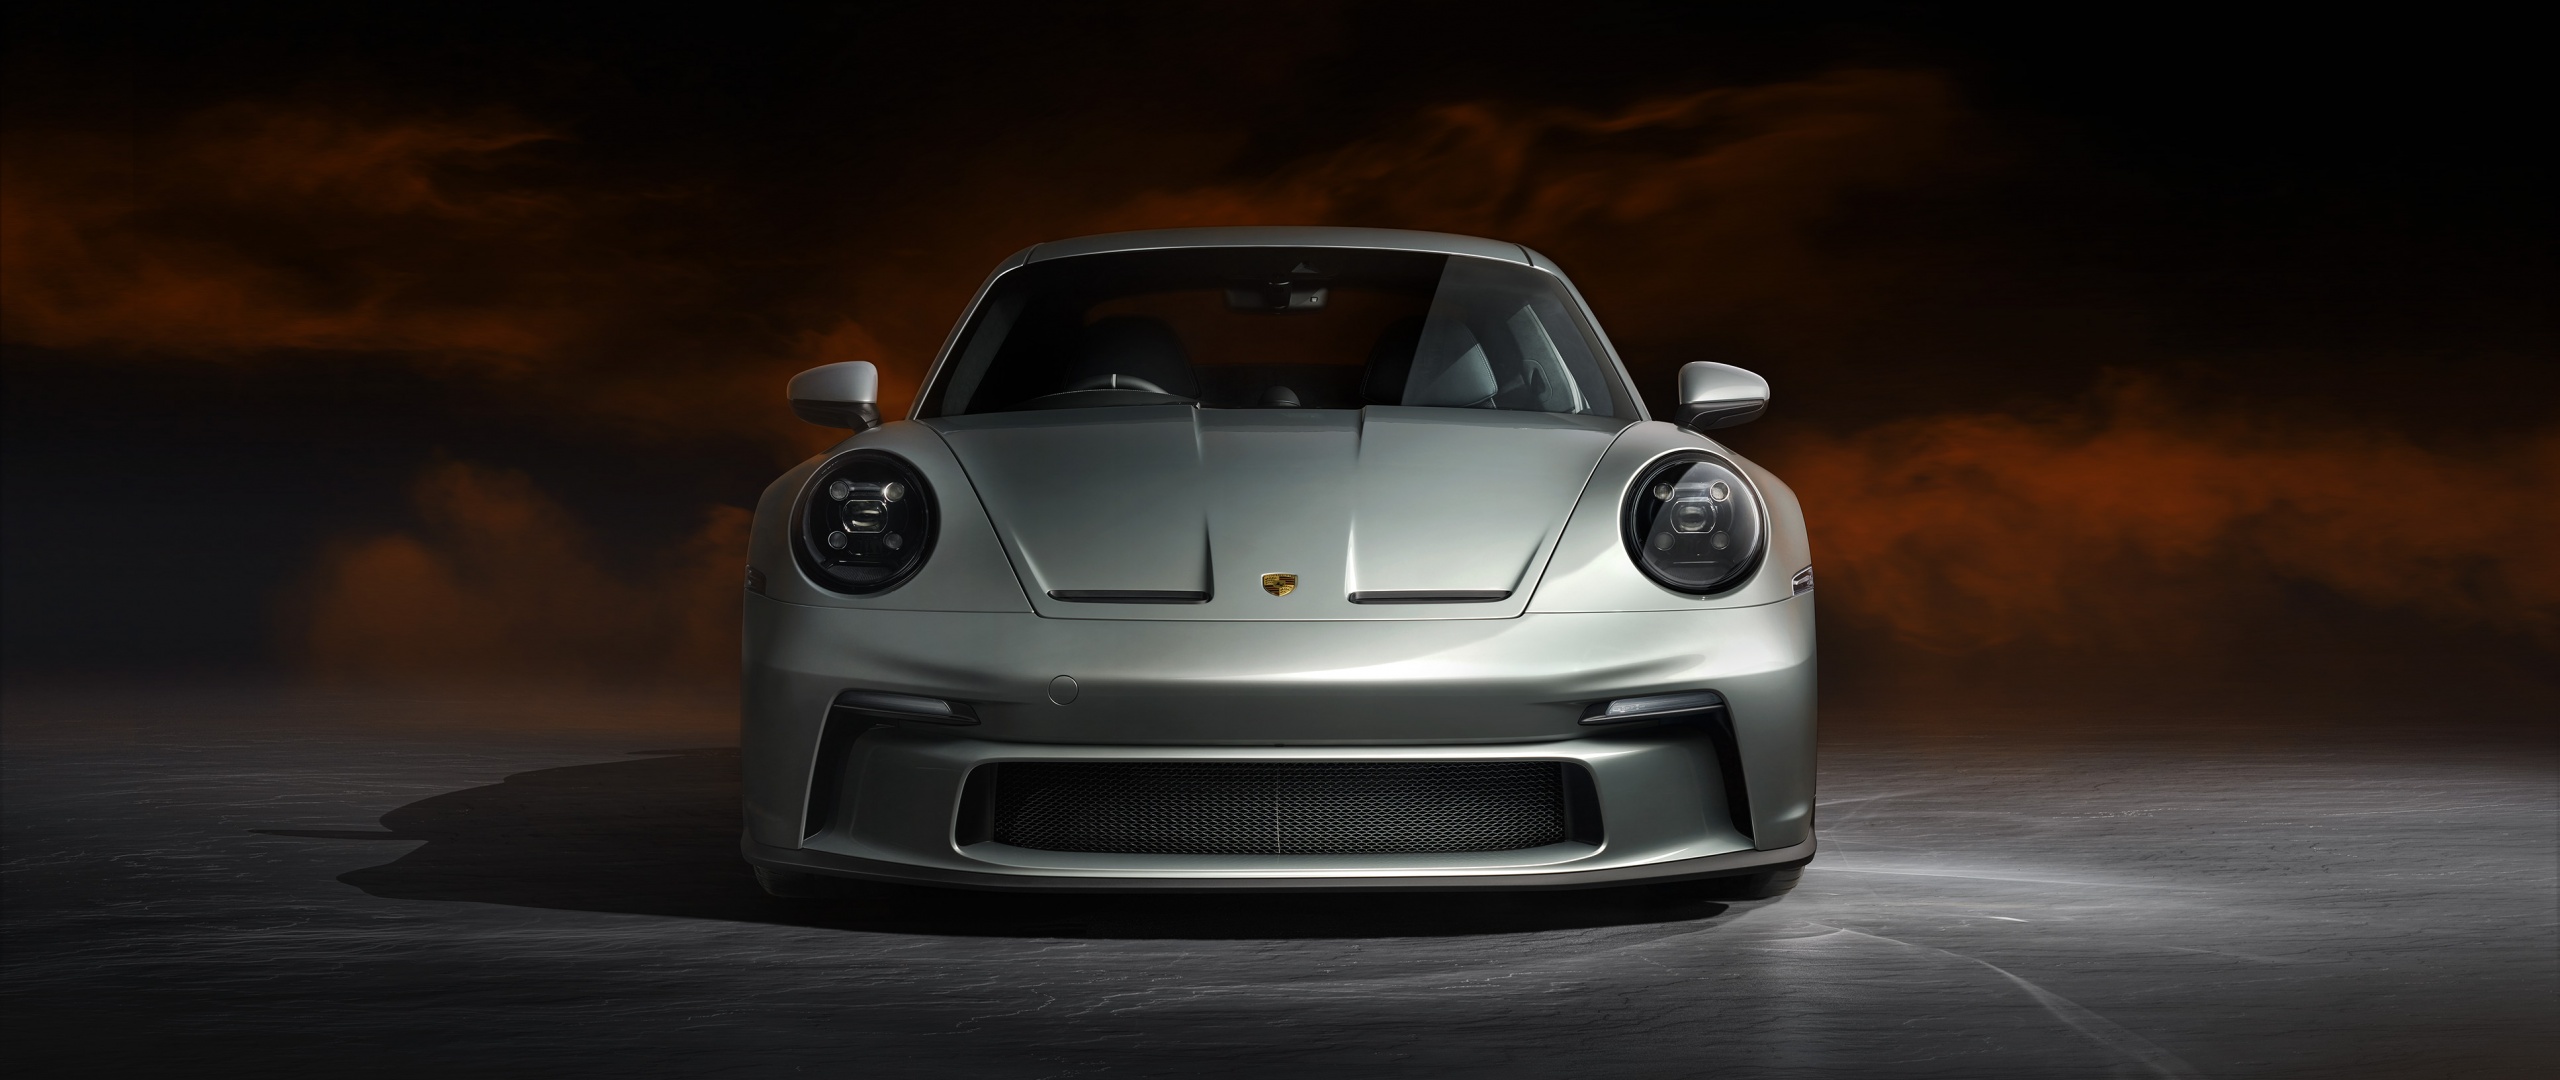 Bức tranh nền Porsche 911 GT3 sẽ làm cho trang chủ điện thoại của bạn nổi bật hơn bao giờ hết. Hình ảnh siêu xe ấn tượng này sẽ khiến bạn muốn chinh phục đường đua ngay lập tức. Hãy tìm kiếm những bức ảnh nền tuyệt đẹp này để thỏa mãn niềm đam mê của bạn.